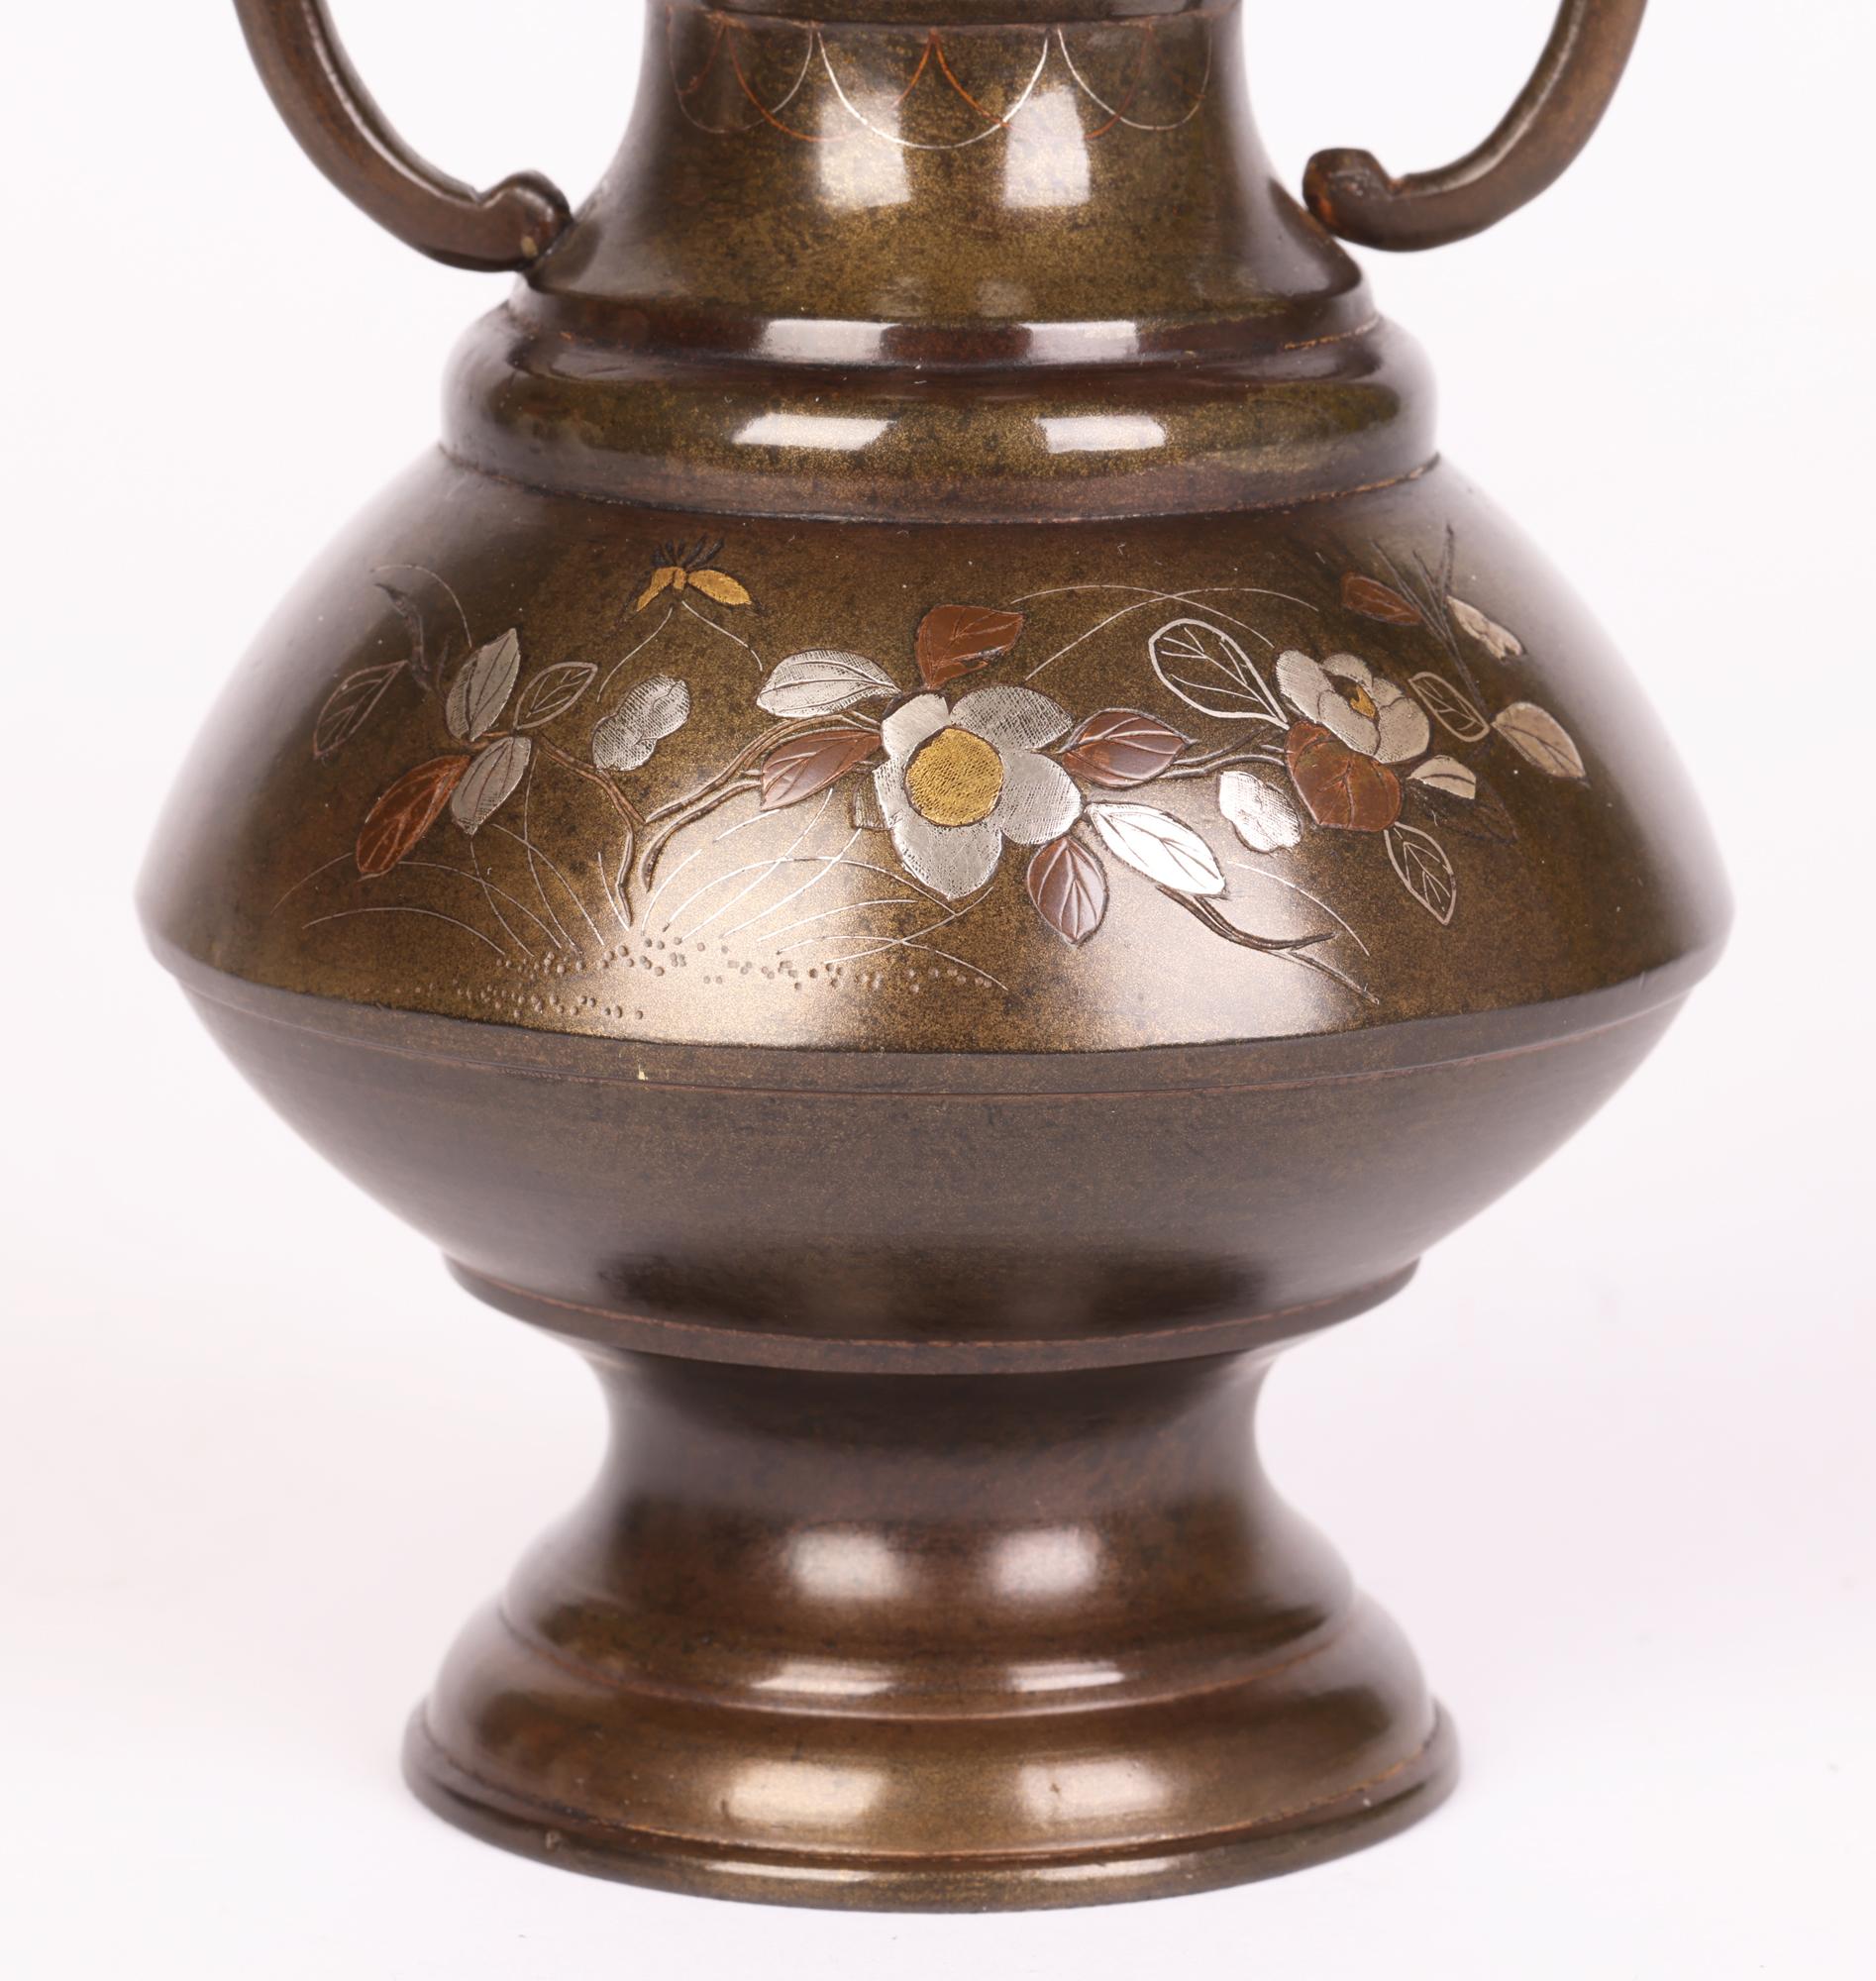 Magnifique vase japonais Meiji en bronze à deux anses, décoré de motifs floraux en argent, laiton et cuivre incrustés, datant du 19e siècle. Le vase repose sur un pied rond, une tige étroite et un corps inférieur rond et profilé, avec un col étagé